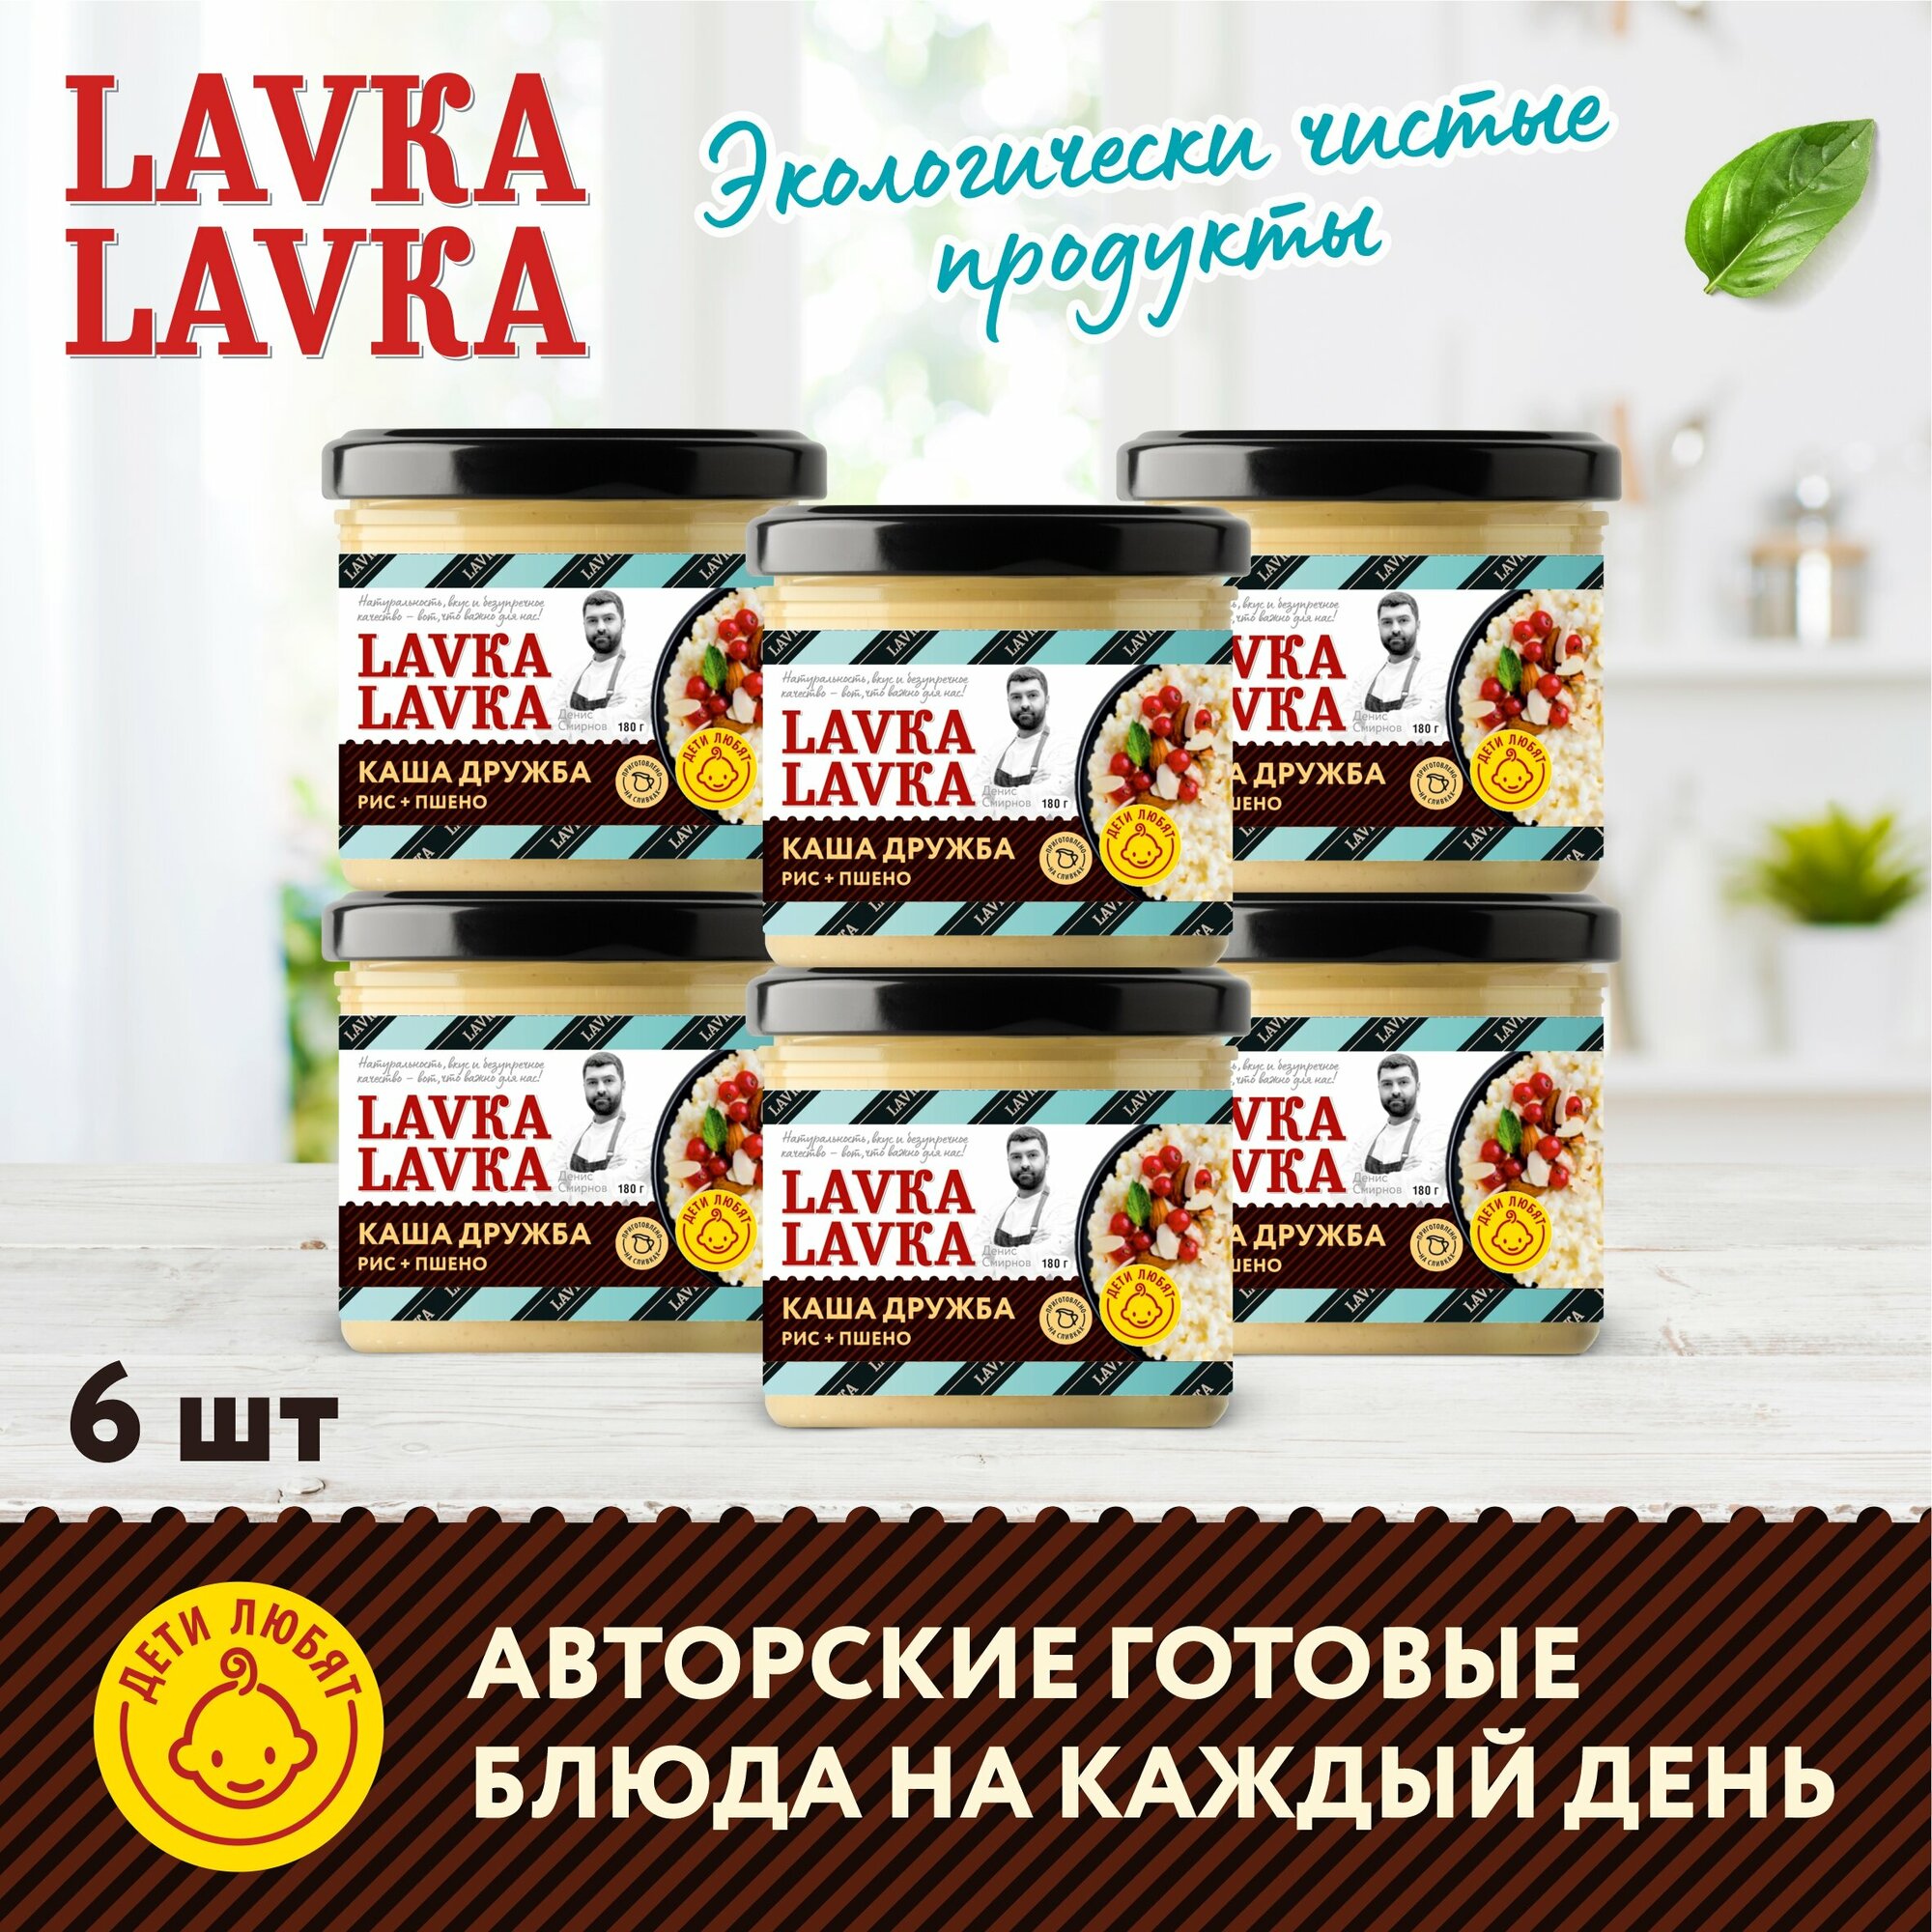 Каша "Дружба" стек. банка, 6 уп. по 180 гр. (LavkaLavka)